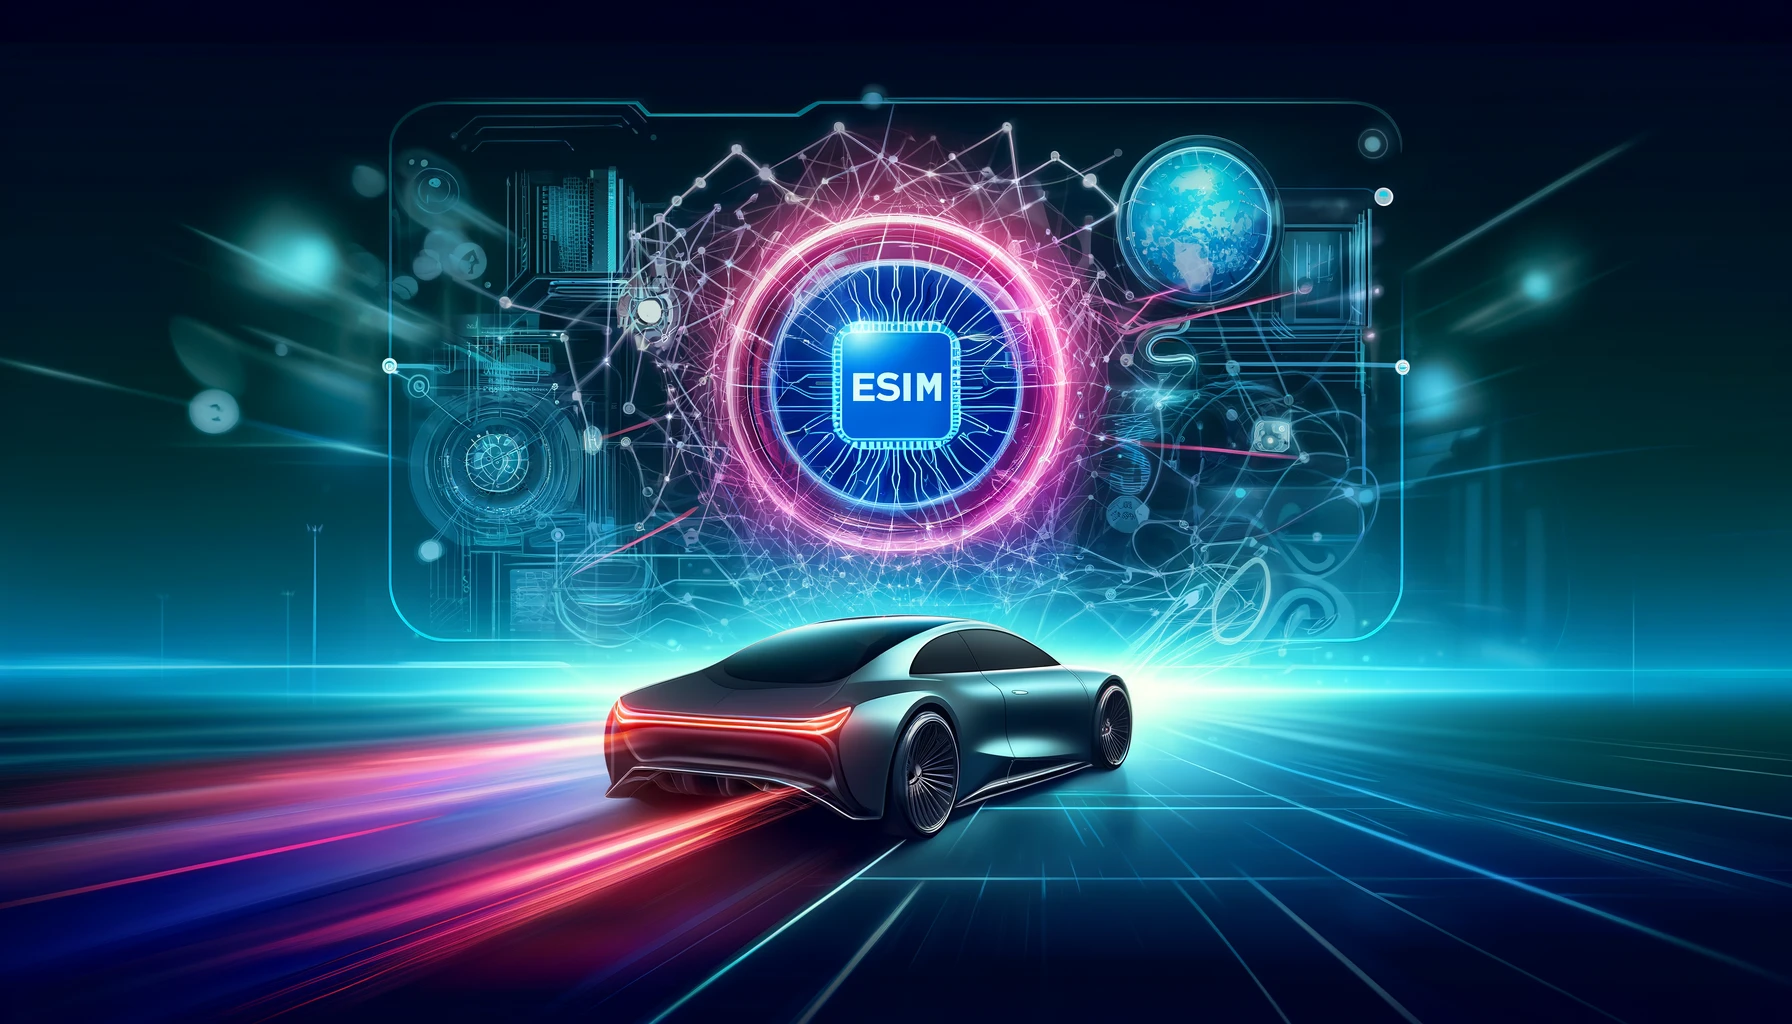 Revolutionizing Automotive Connectivity with eSIM Technology - obrázek novinky na imei.info